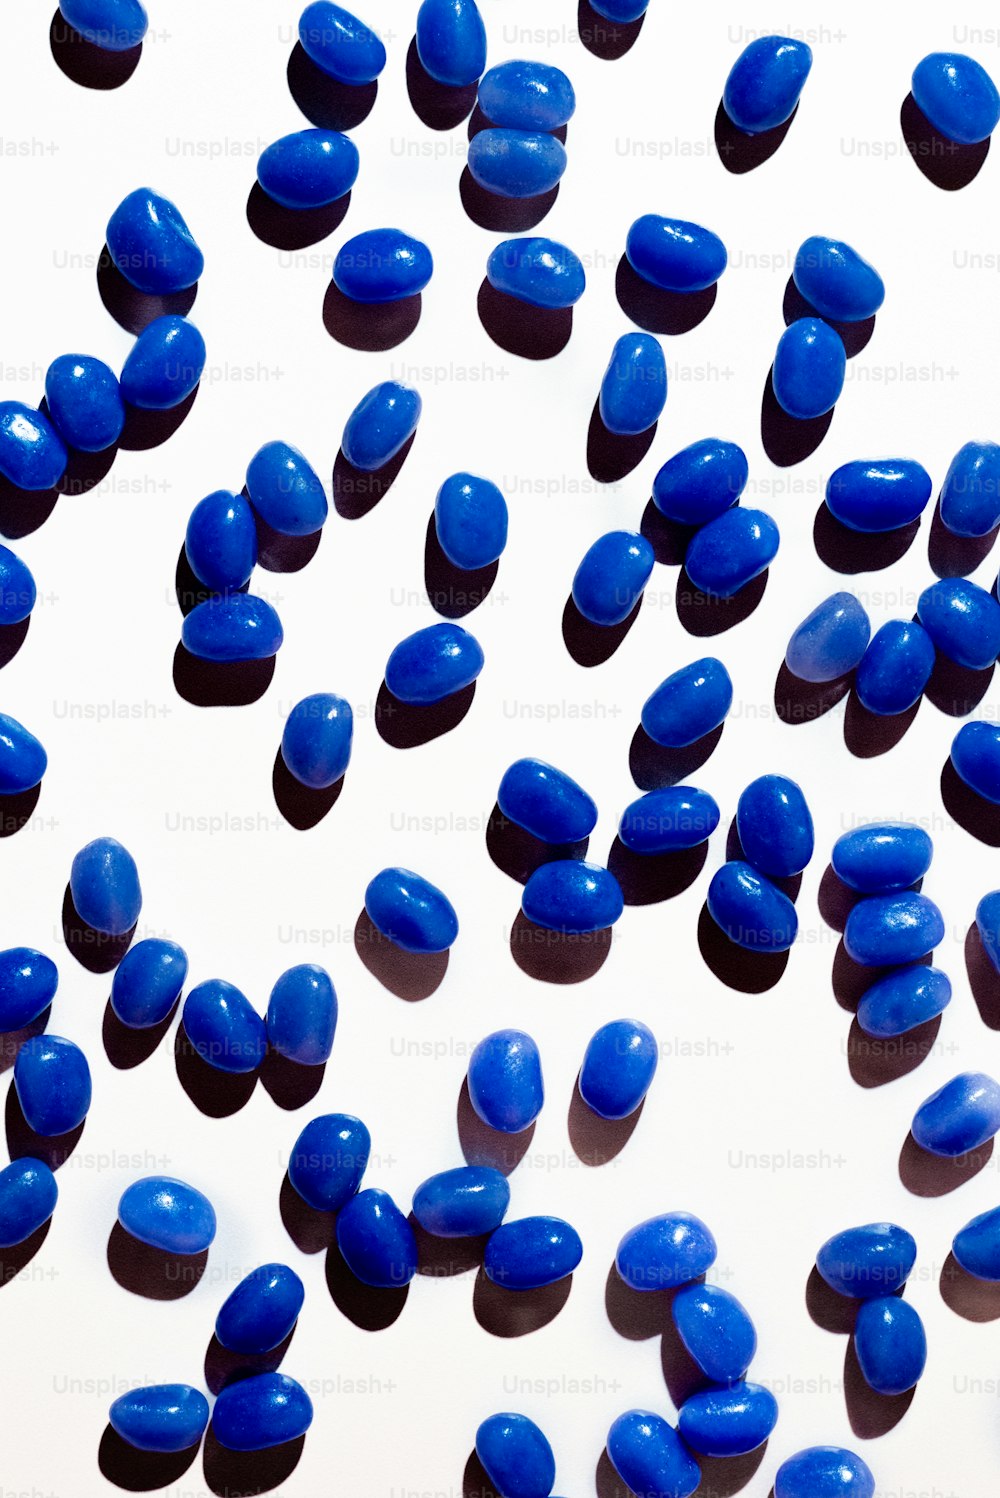 Molte pillole blu sono sparse su una superficie bianca